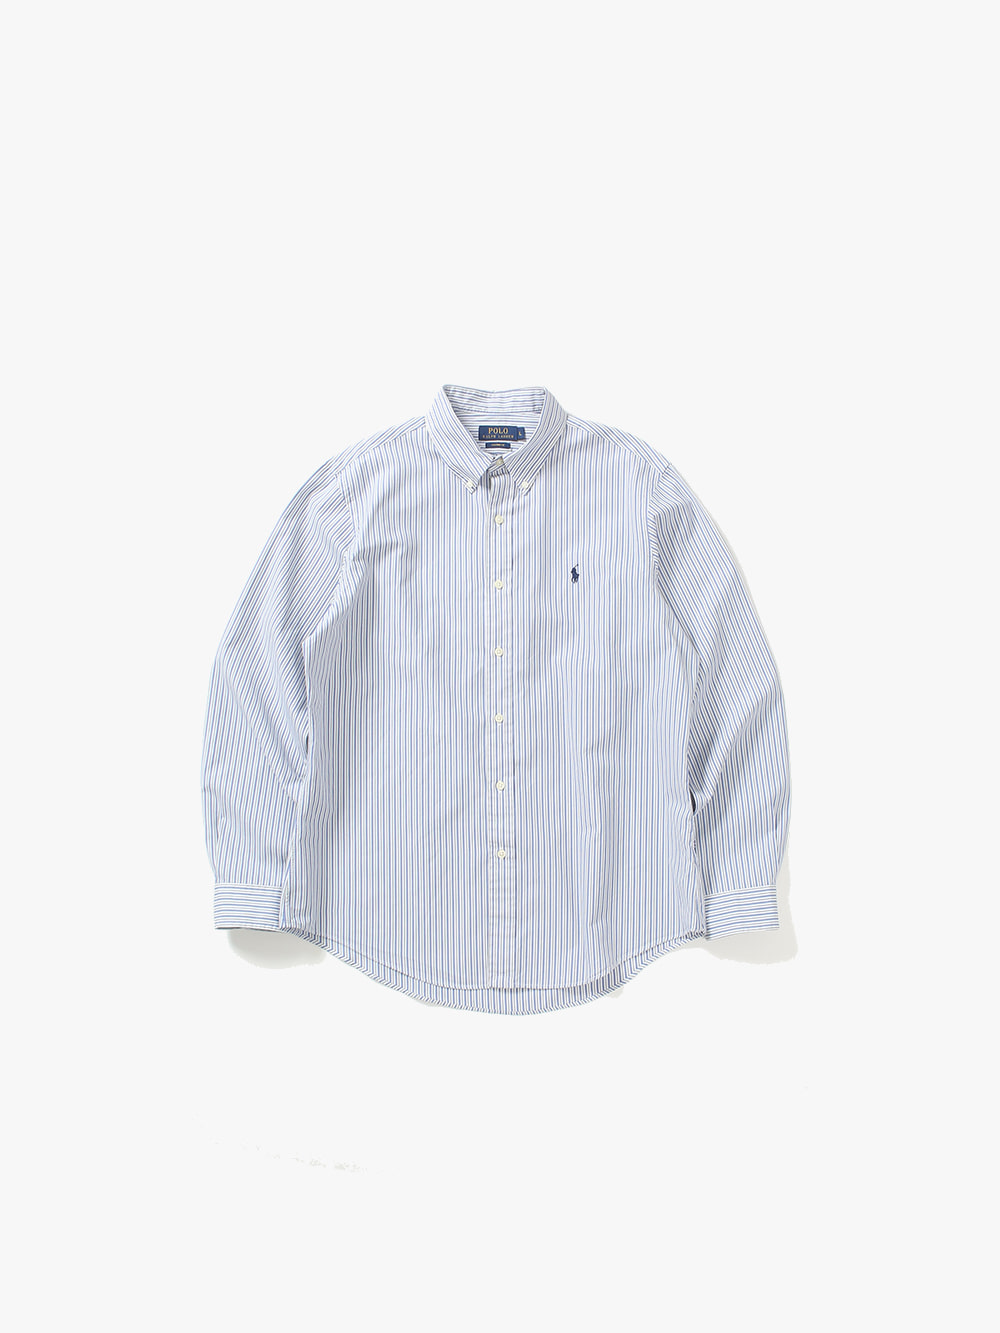 [ L ] Polo Ralph Lauren Shirt (6306)